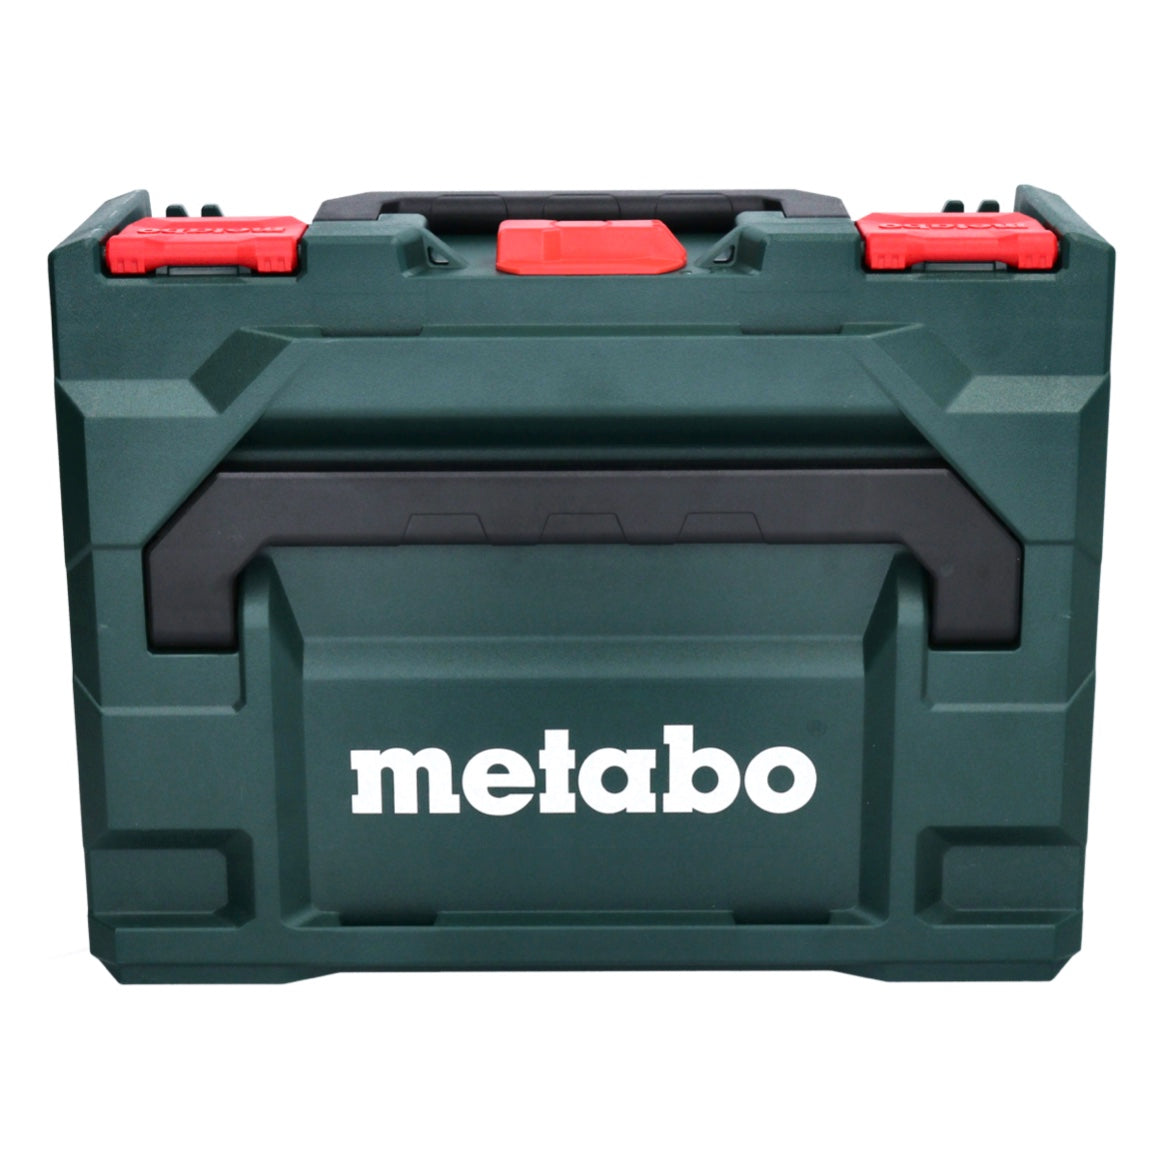 Metabo BS 18 LT BL perceuse-visseuse sans fil 18 V 75 Nm sans balais + 1x batterie 5,5 Ah + chargeur + métaBOX